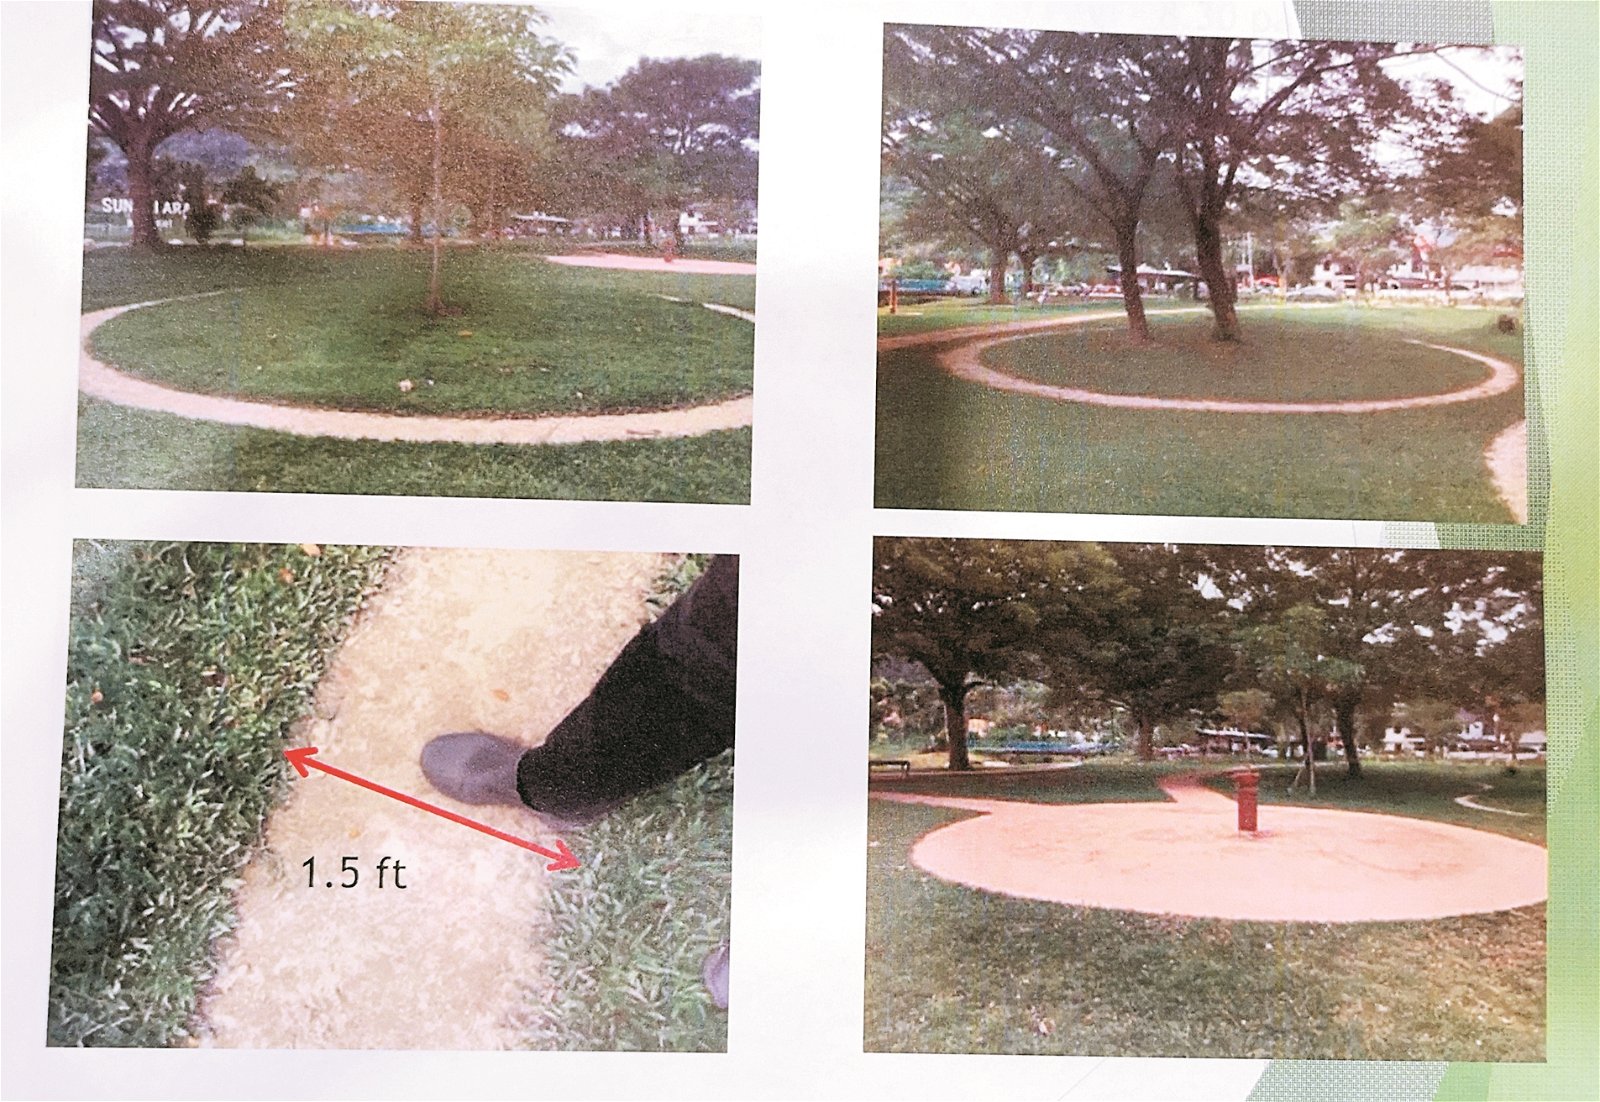 槟岛市政厅发布照片，显示新港直线公园草地已遭“八卦内功”的会员“开辟”多个圈圈走道，严重破坏公园草地。